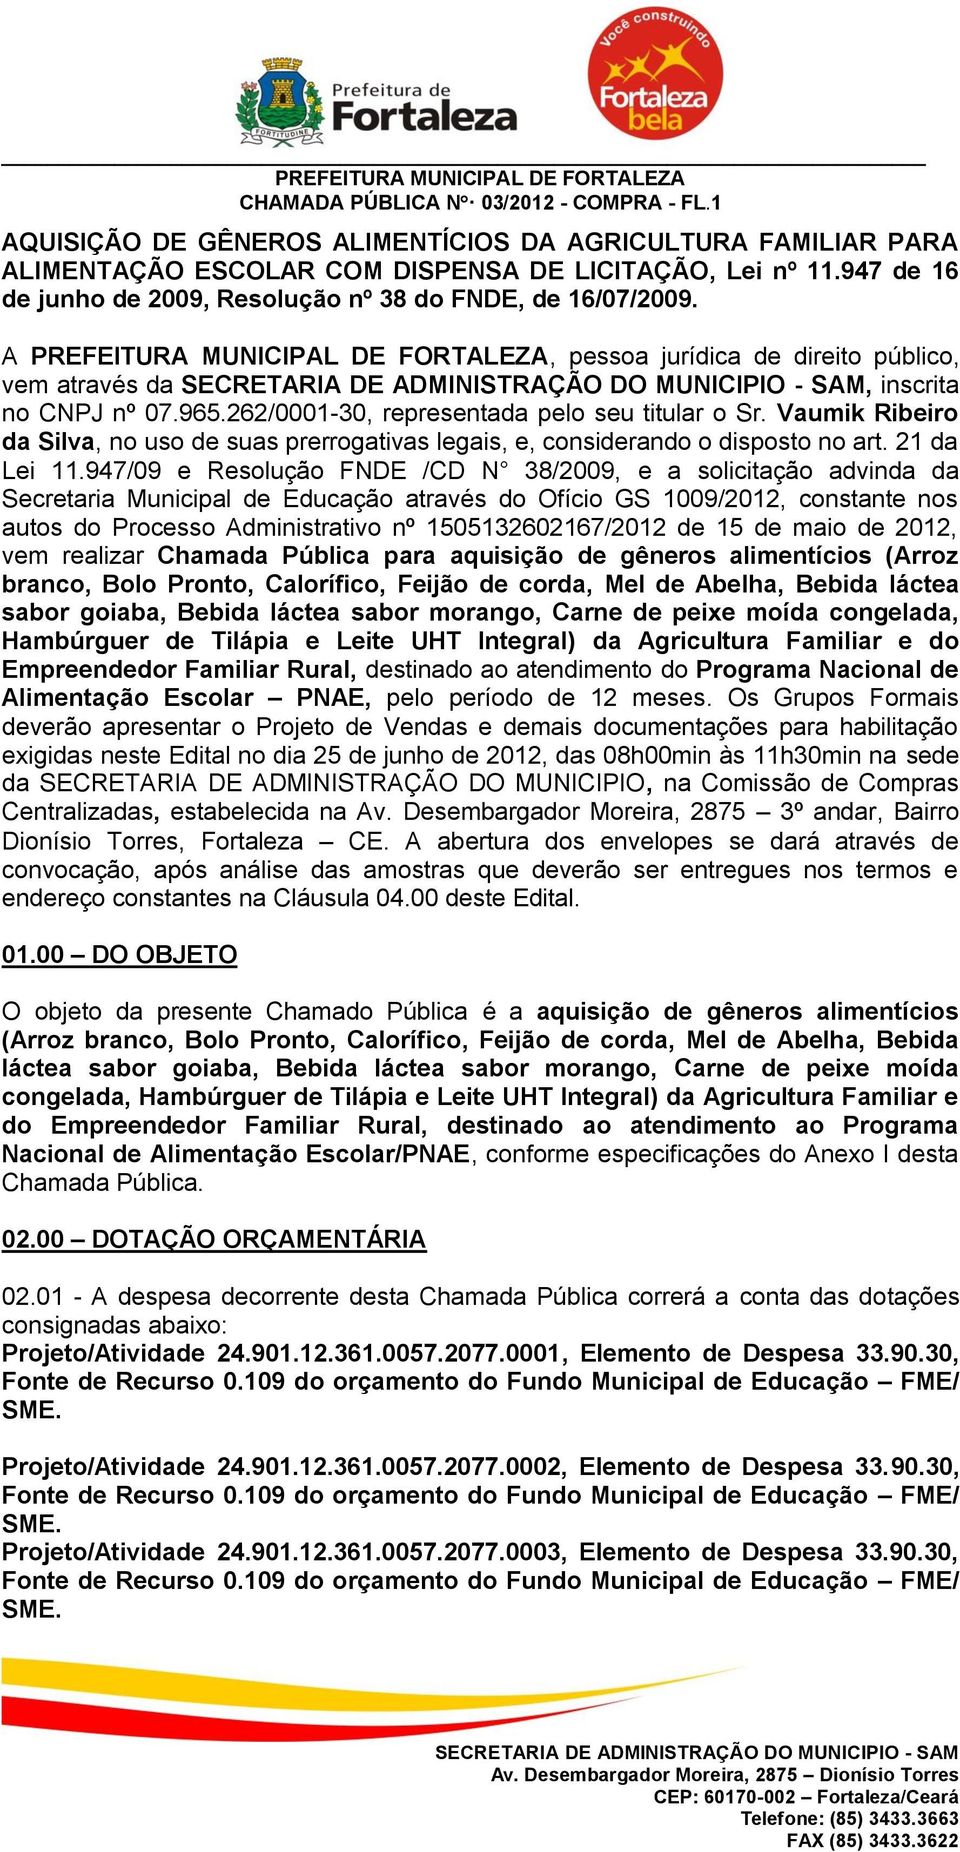 262/0001-30, representada pelo seu titular o Sr. Vaumik Ribeiro da Silva, no uso de suas prerrogativas legais, e, considerando o disposto no art. 21 da Lei 11.